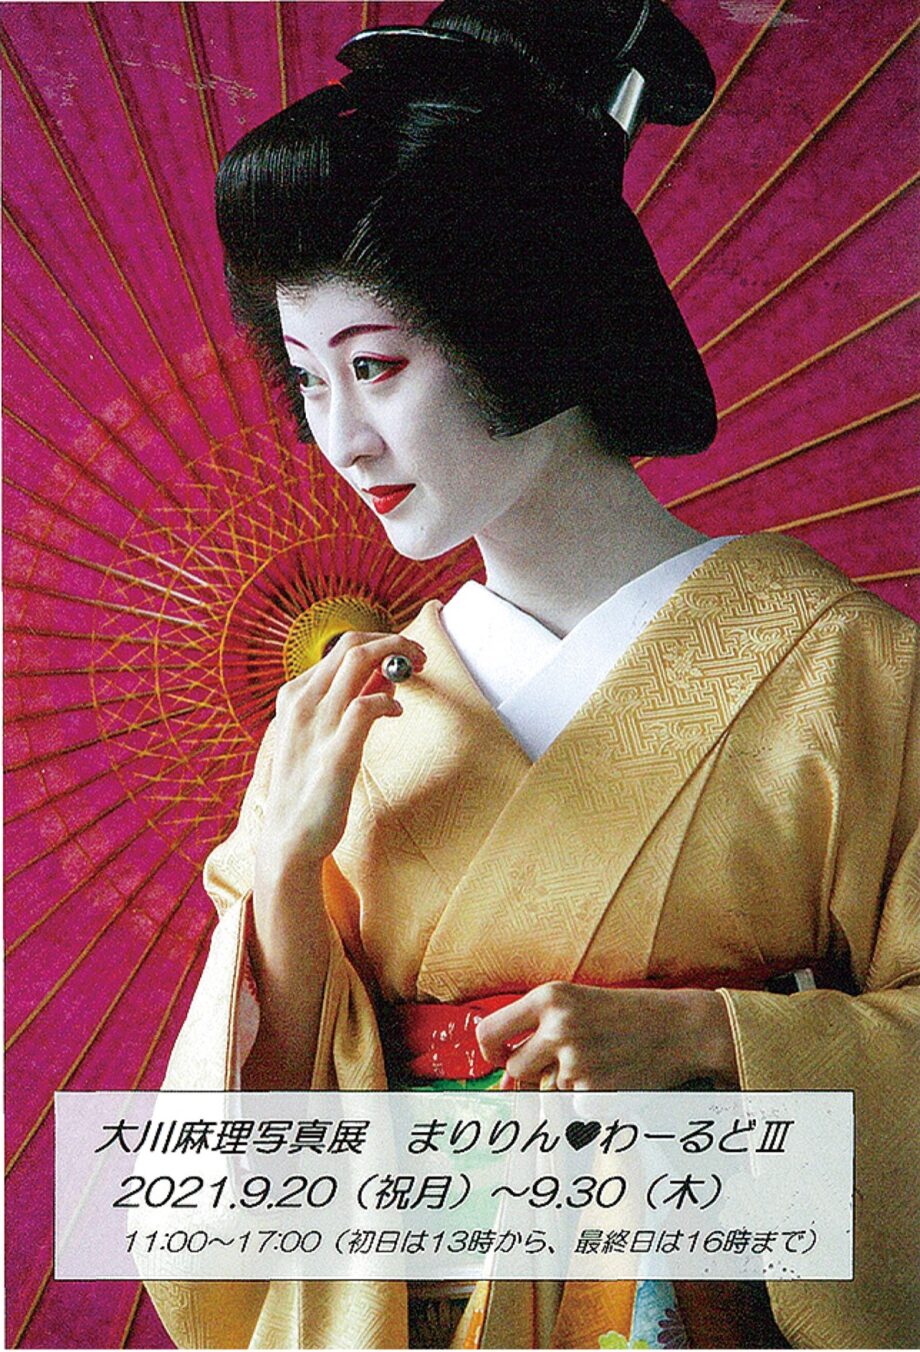 京都の舞妓さん、バレエの舞台裏の写真を展示ー和と洋の夢の世界「まりりん♡わーるどIII」＠八王子市